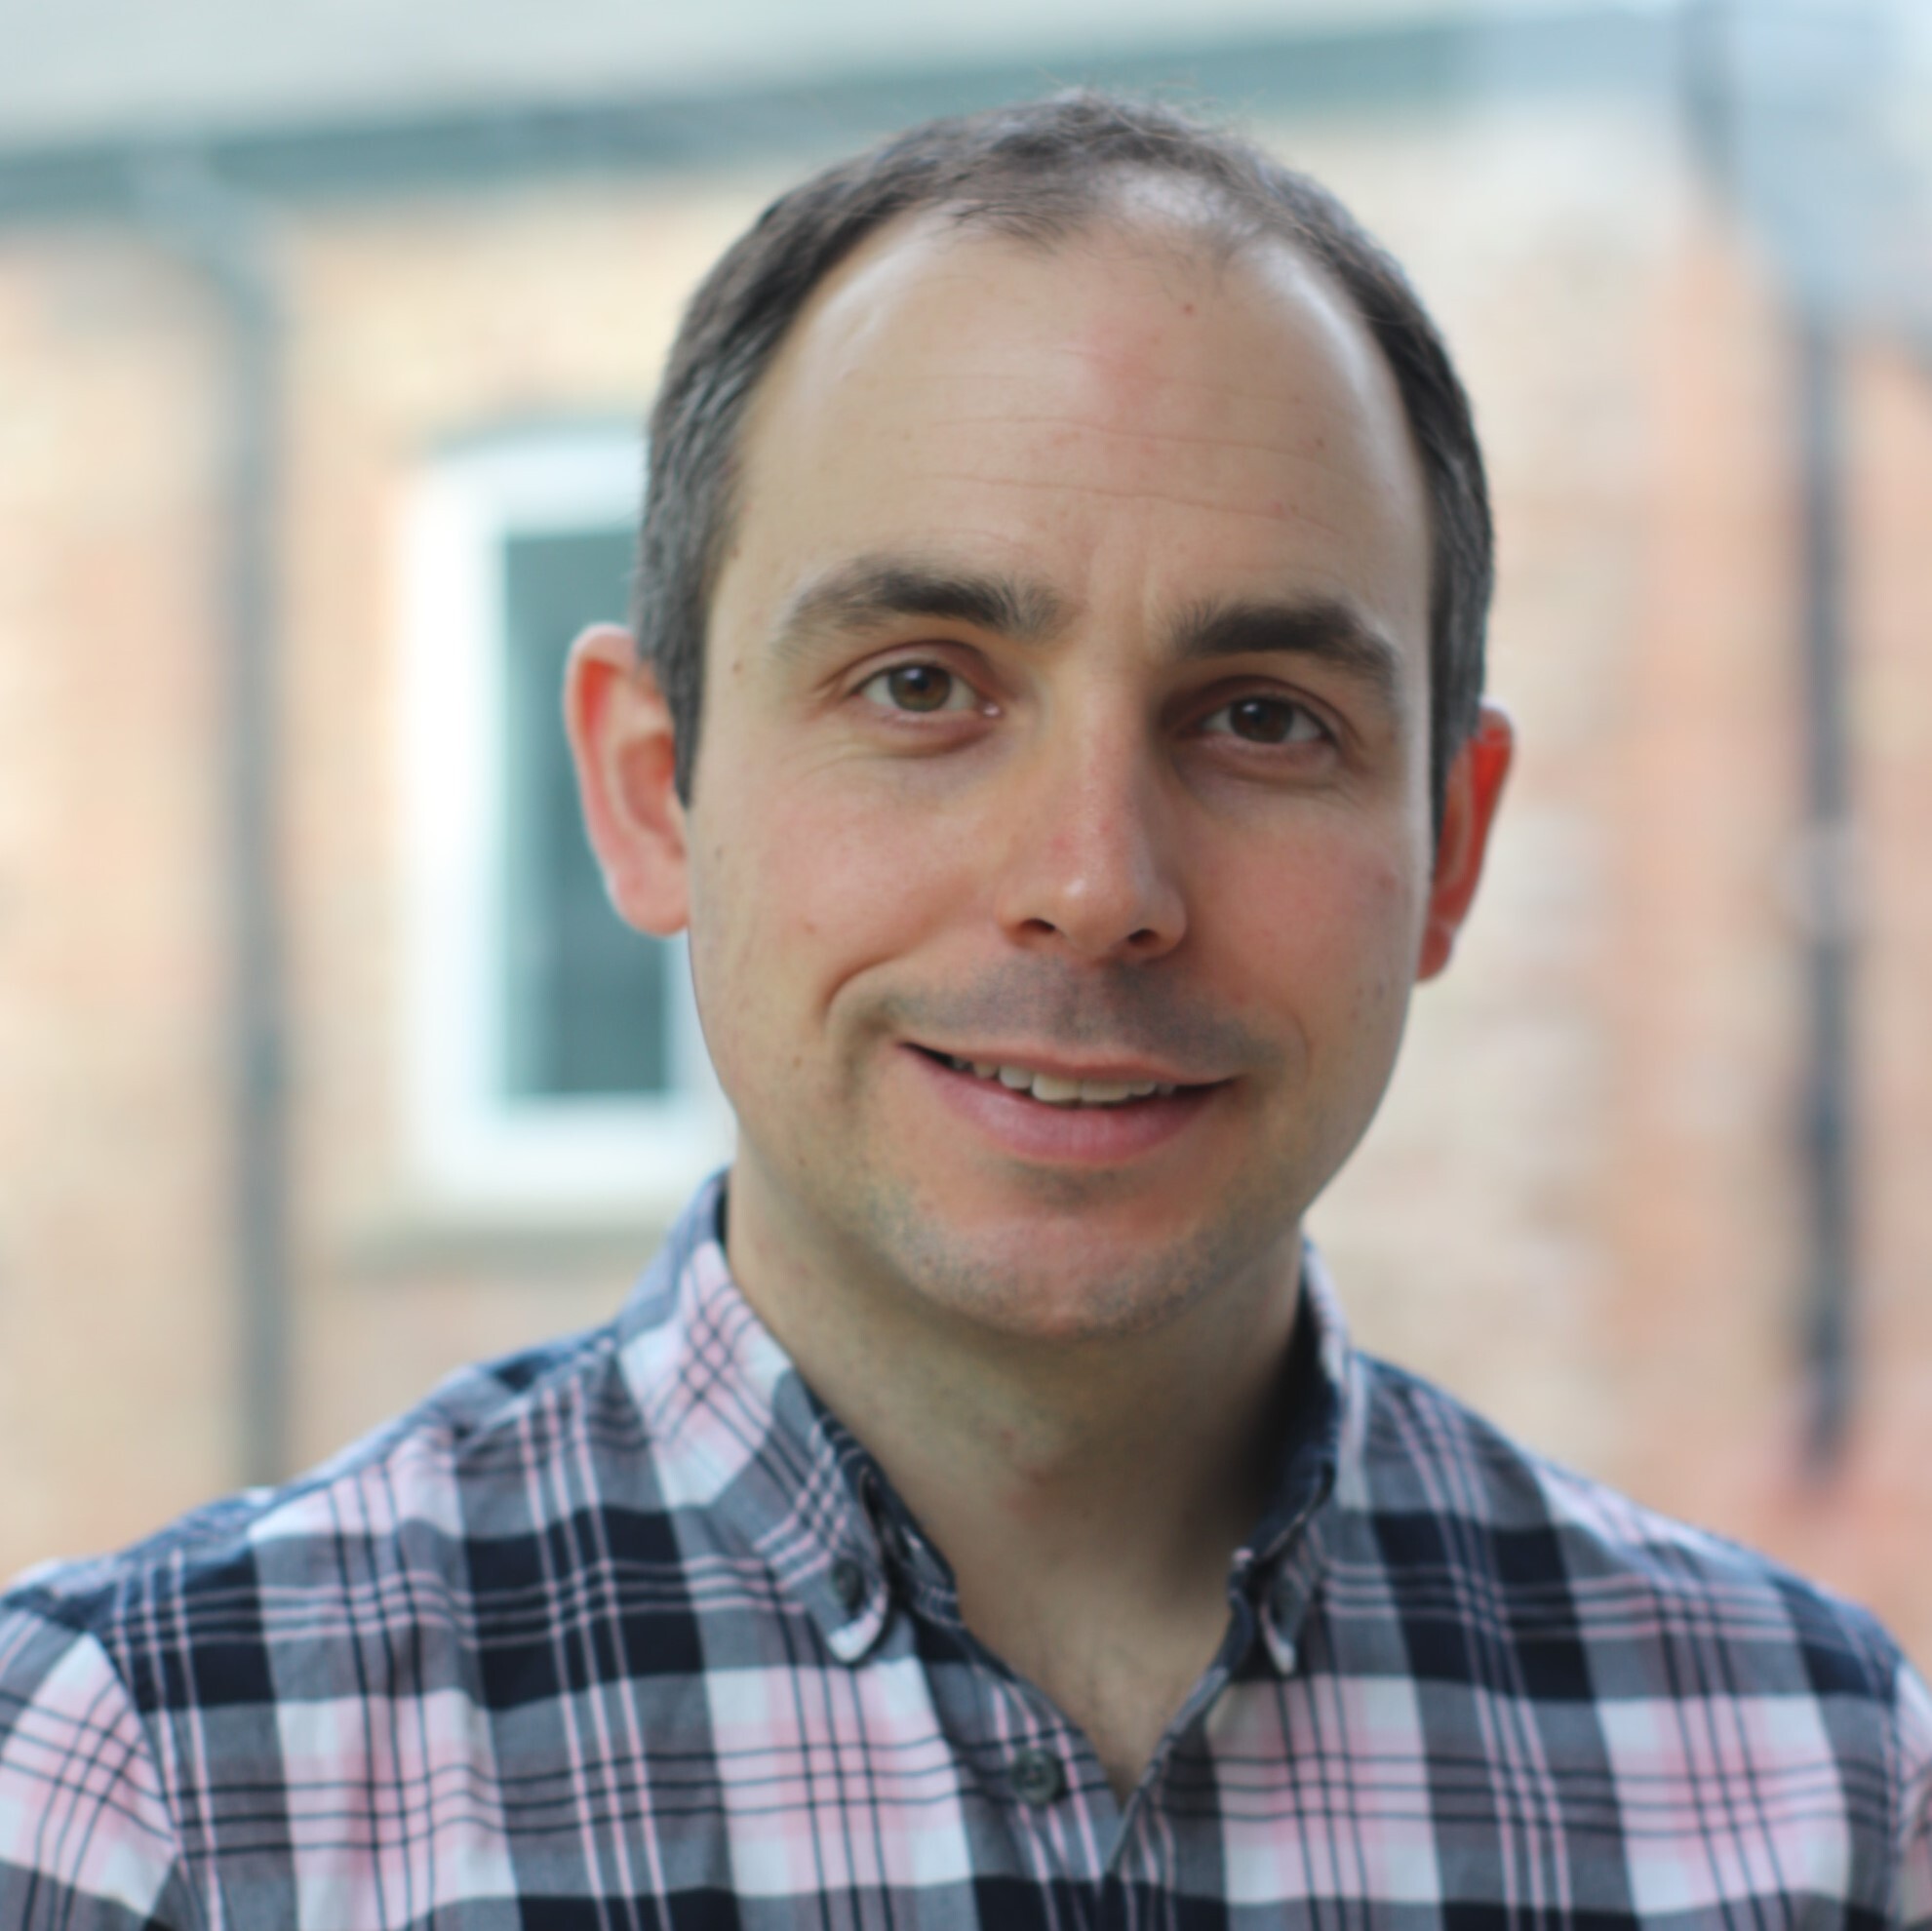 Matt Lovell, global director of data and insight, Pret a Manger